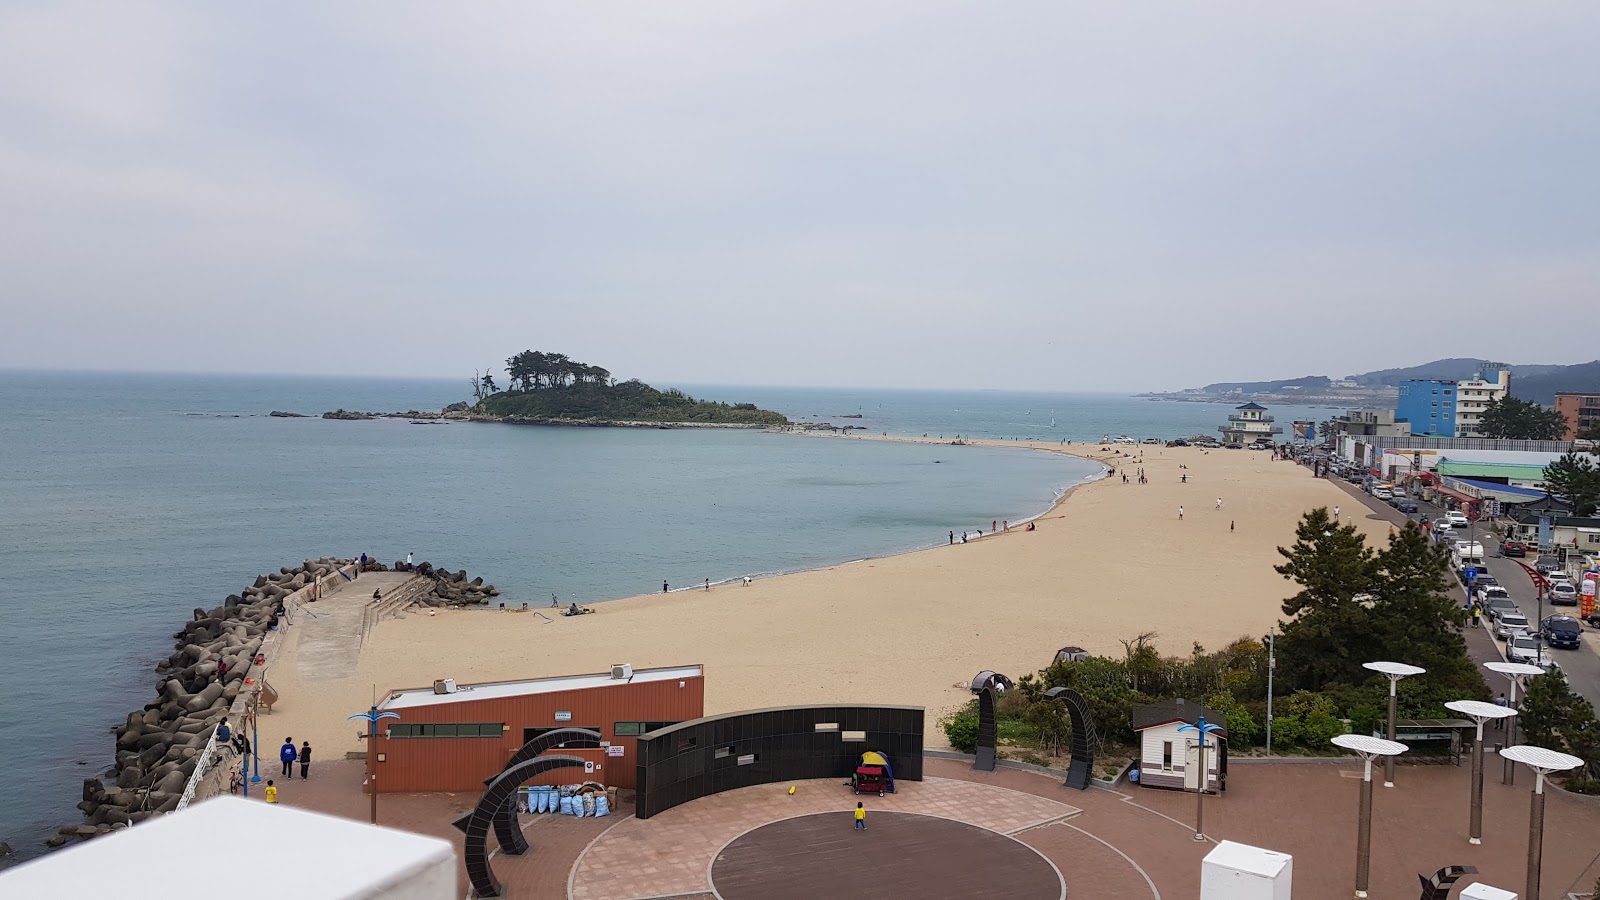 Foto af Jinha Beach - populært sted blandt afslapningskendere